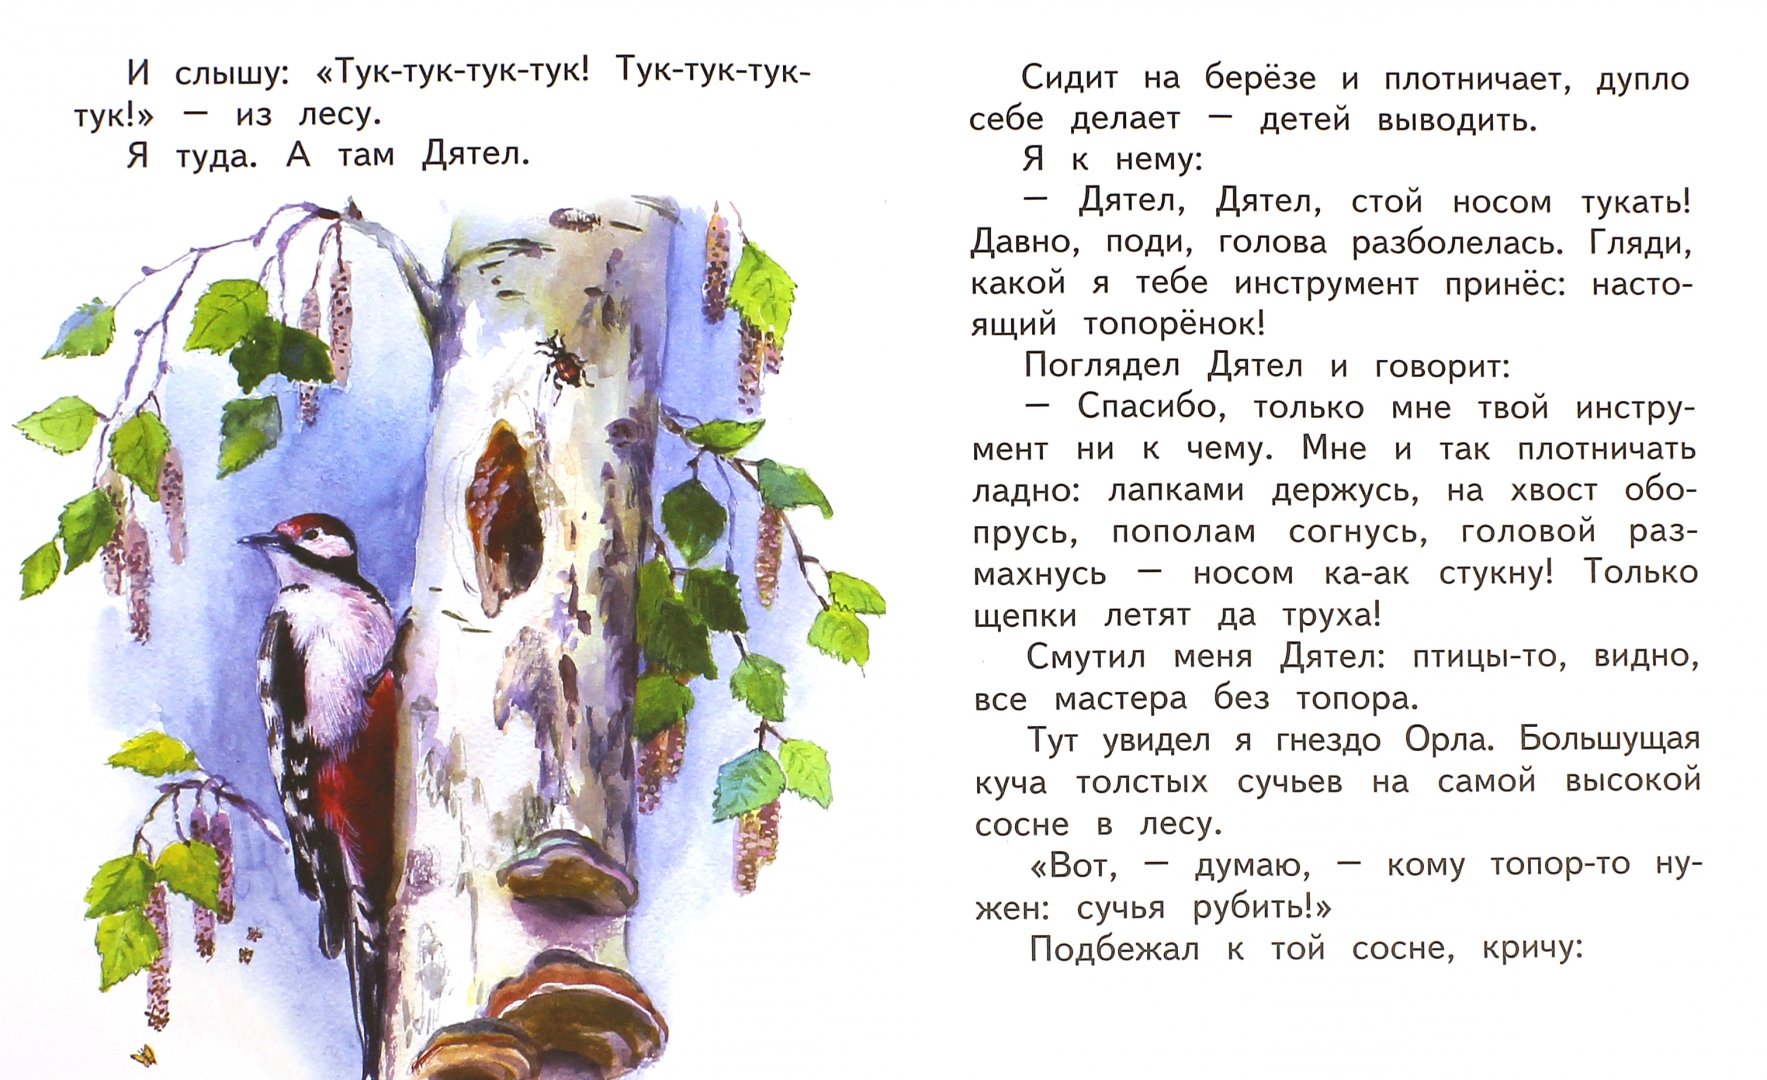 Иллюстрация 1 из 14 для Мастера без топора - Виталий Бианки | Лабиринт - книги. Источник: Лабиринт